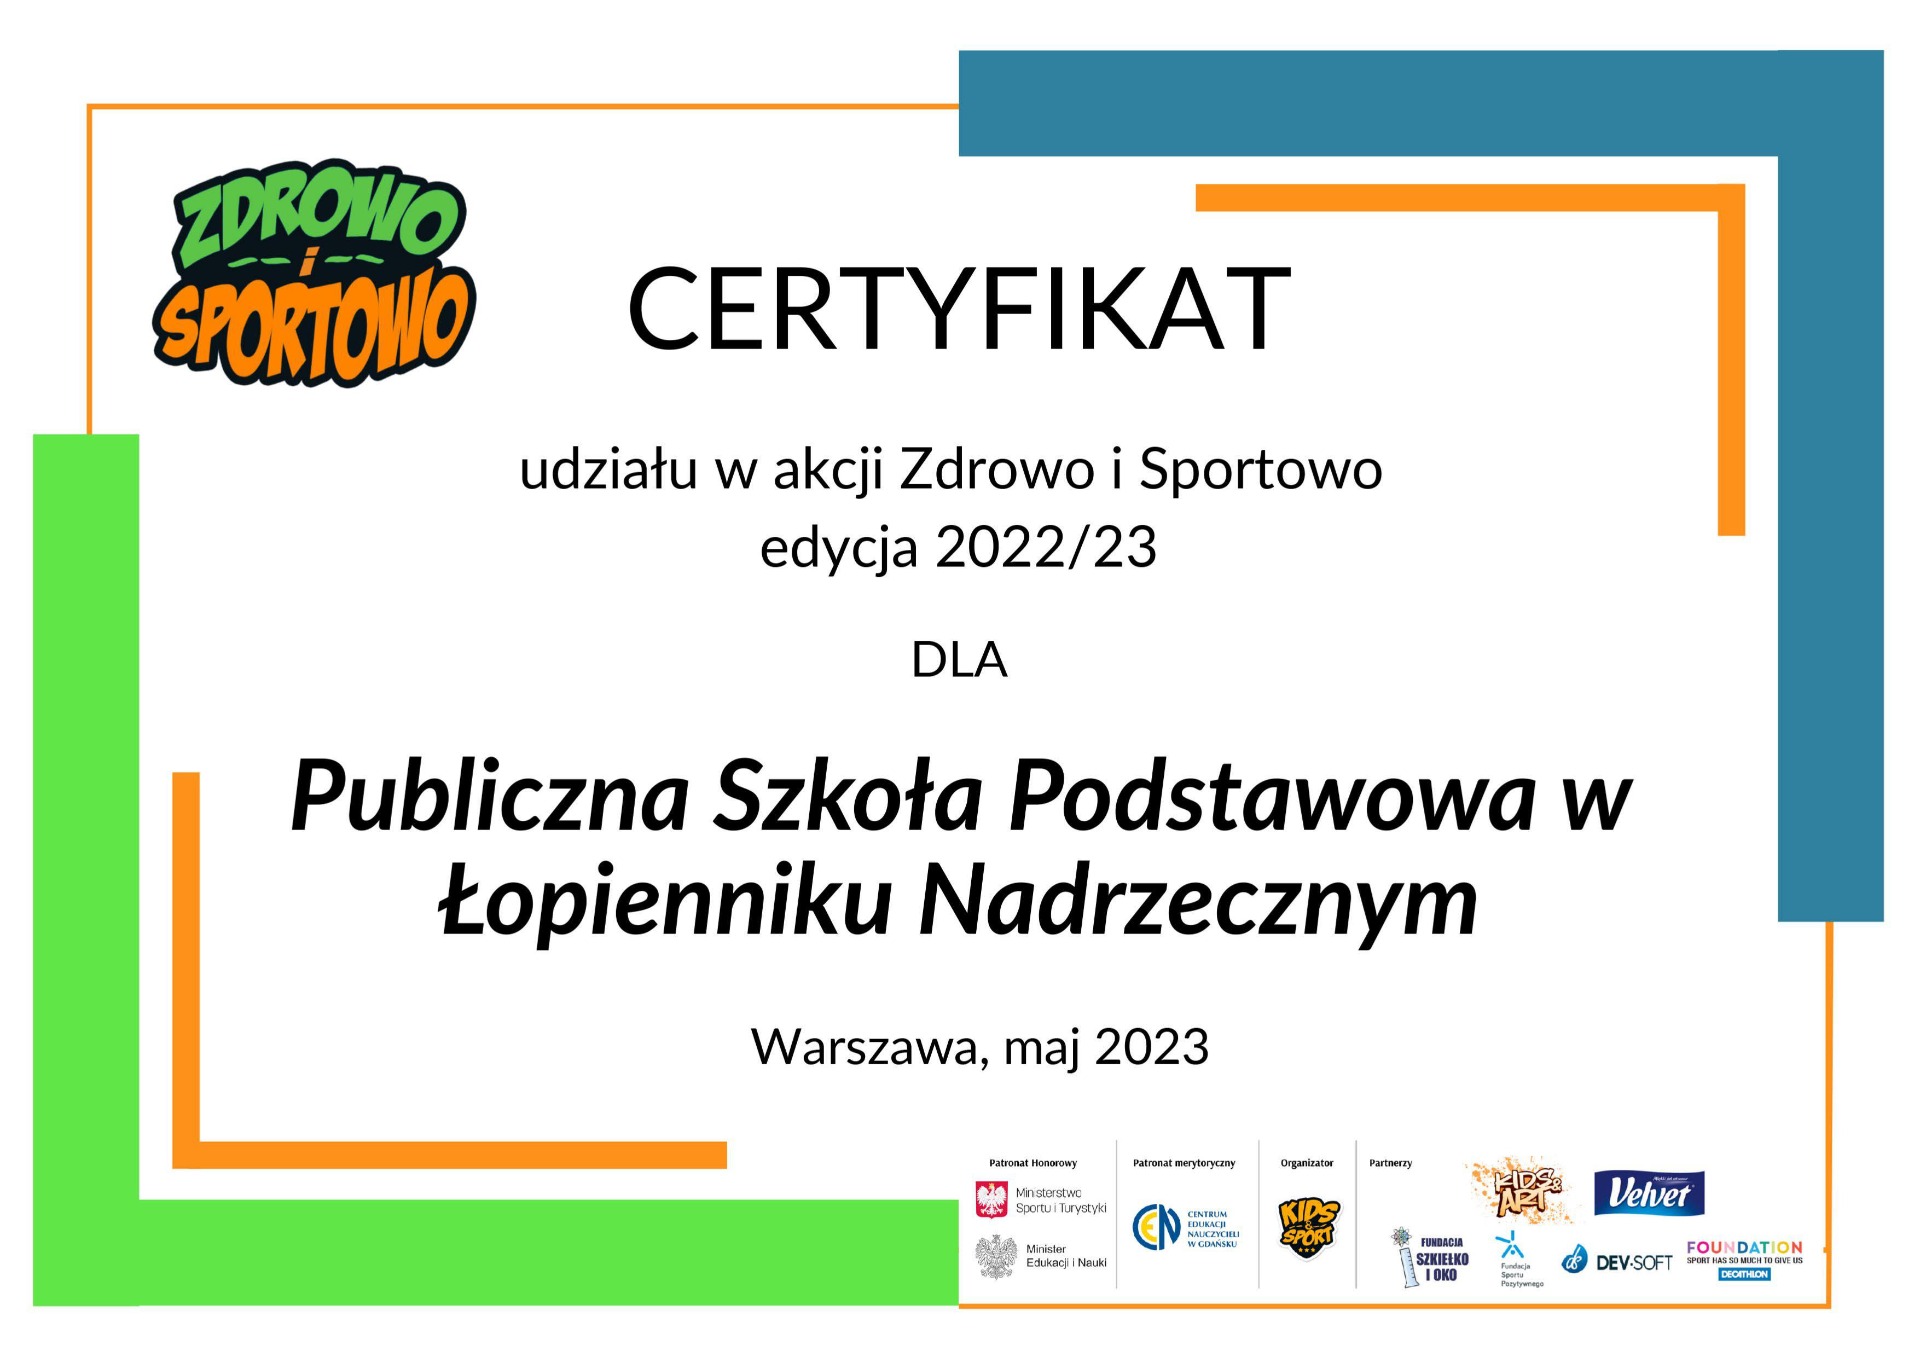 Certyfikat "Zdrowo i Sportowo” - Obrazek 1